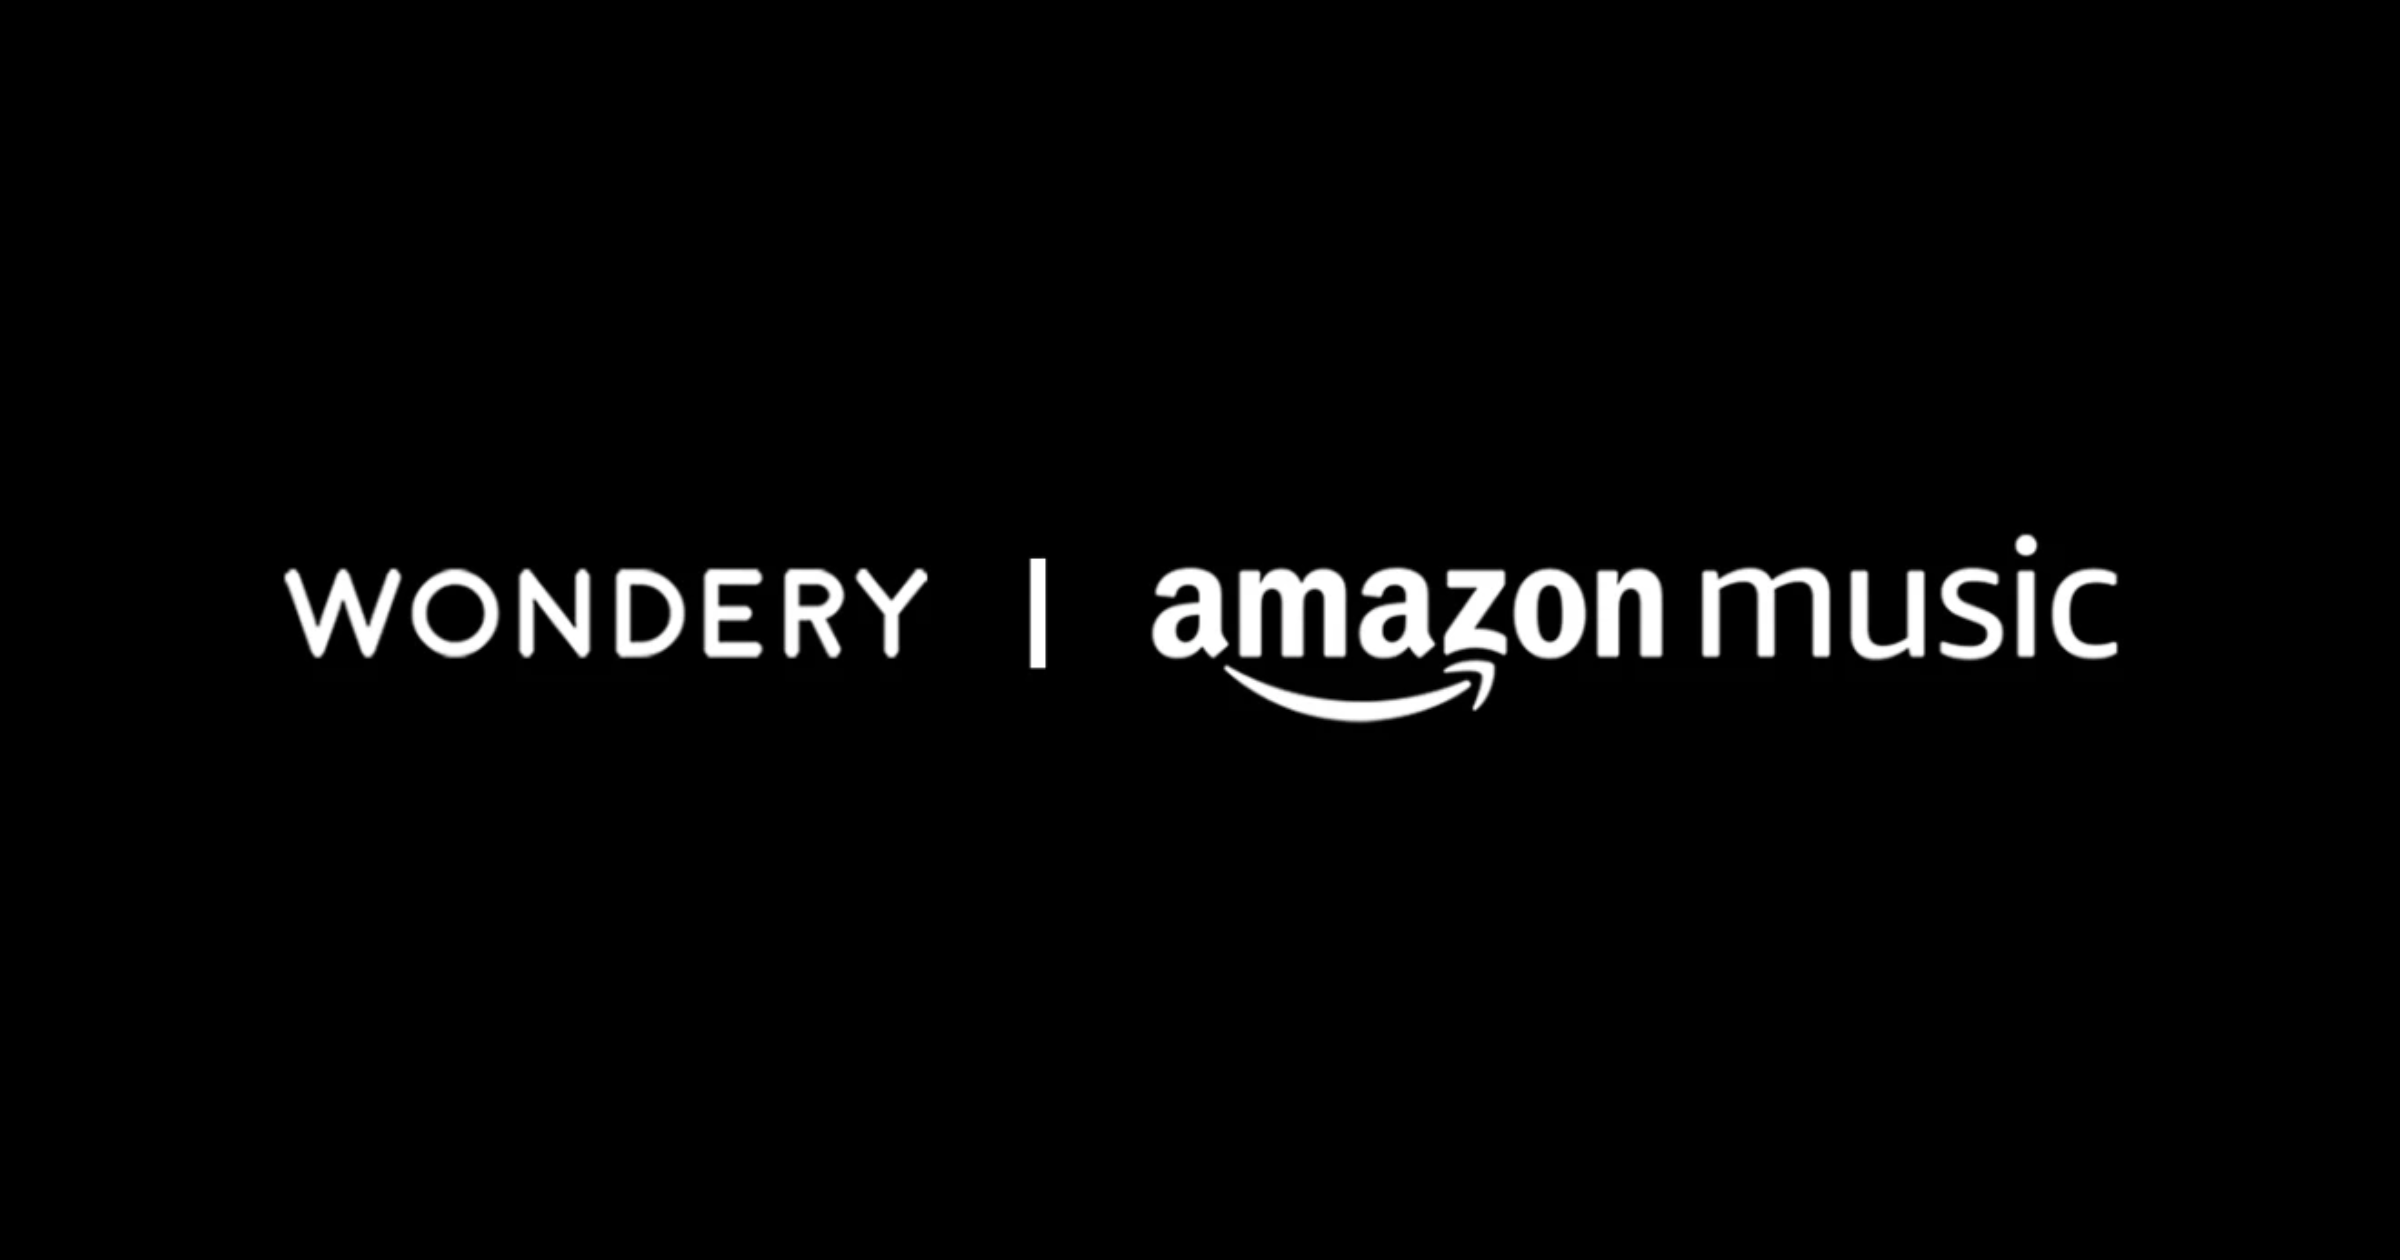 Amazon Wondery